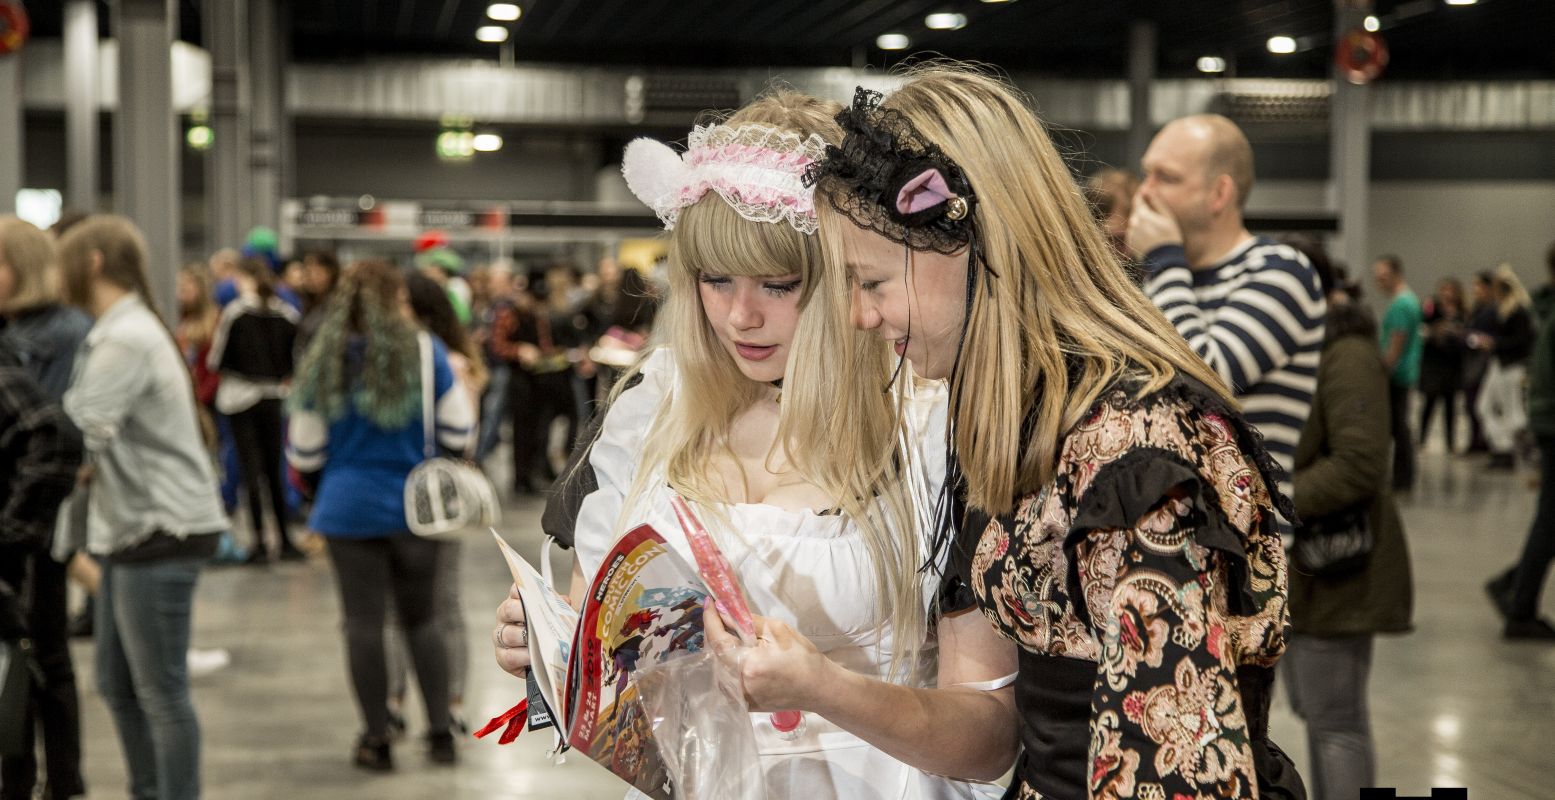 Beleef betoverende dagen met andere fans en shop meteen je favo fantasy spullen. Foto: Heroes Dutch Comic Con © Bart Nijs